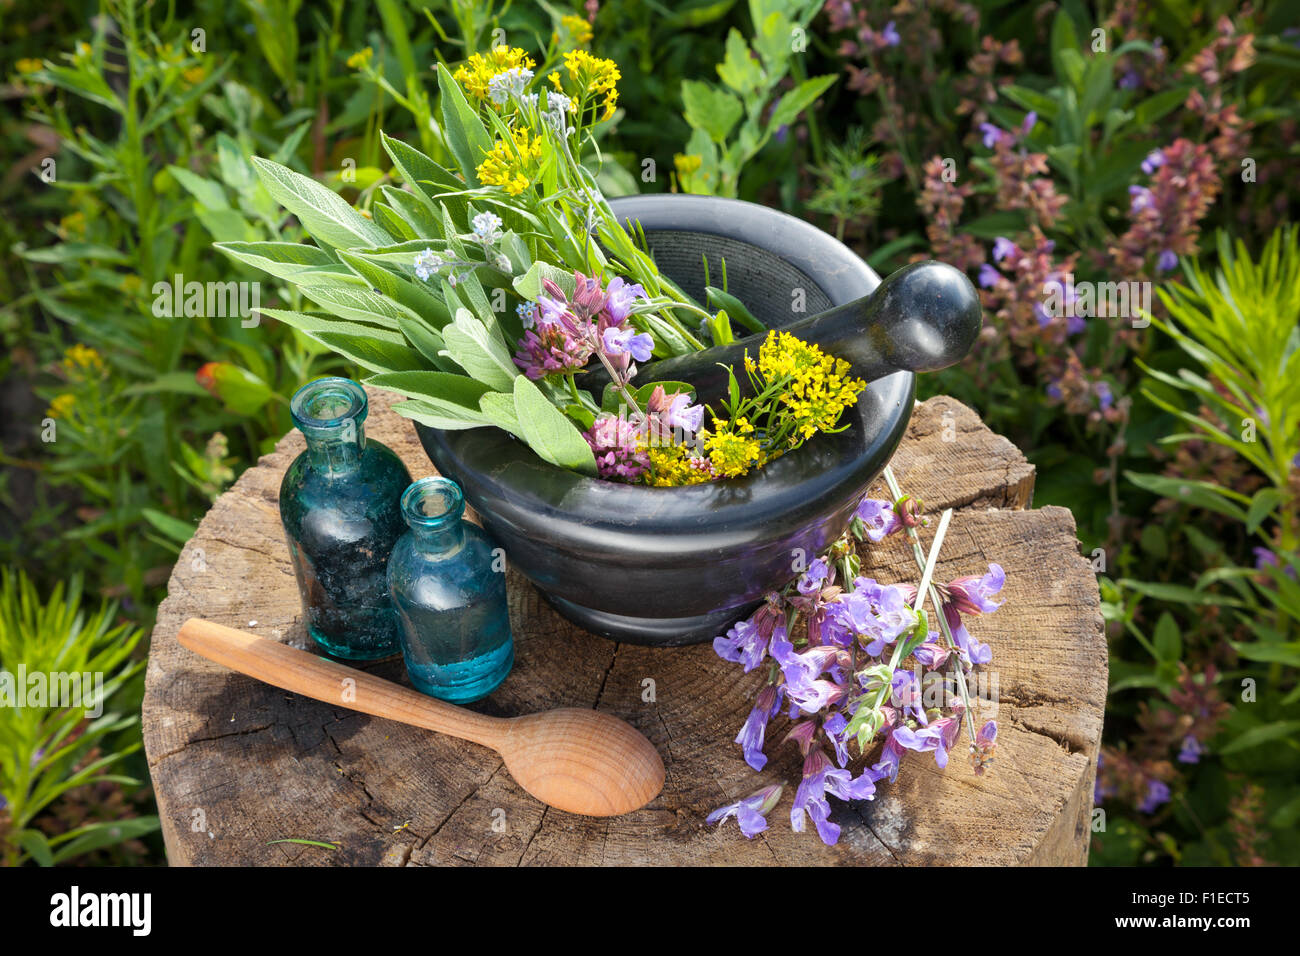 Mörtel mit Heilkräutern und Salbei, Flaschen von ätherischen Ölen im Garten. Pflanzliche Arzneimittel. Stockfoto